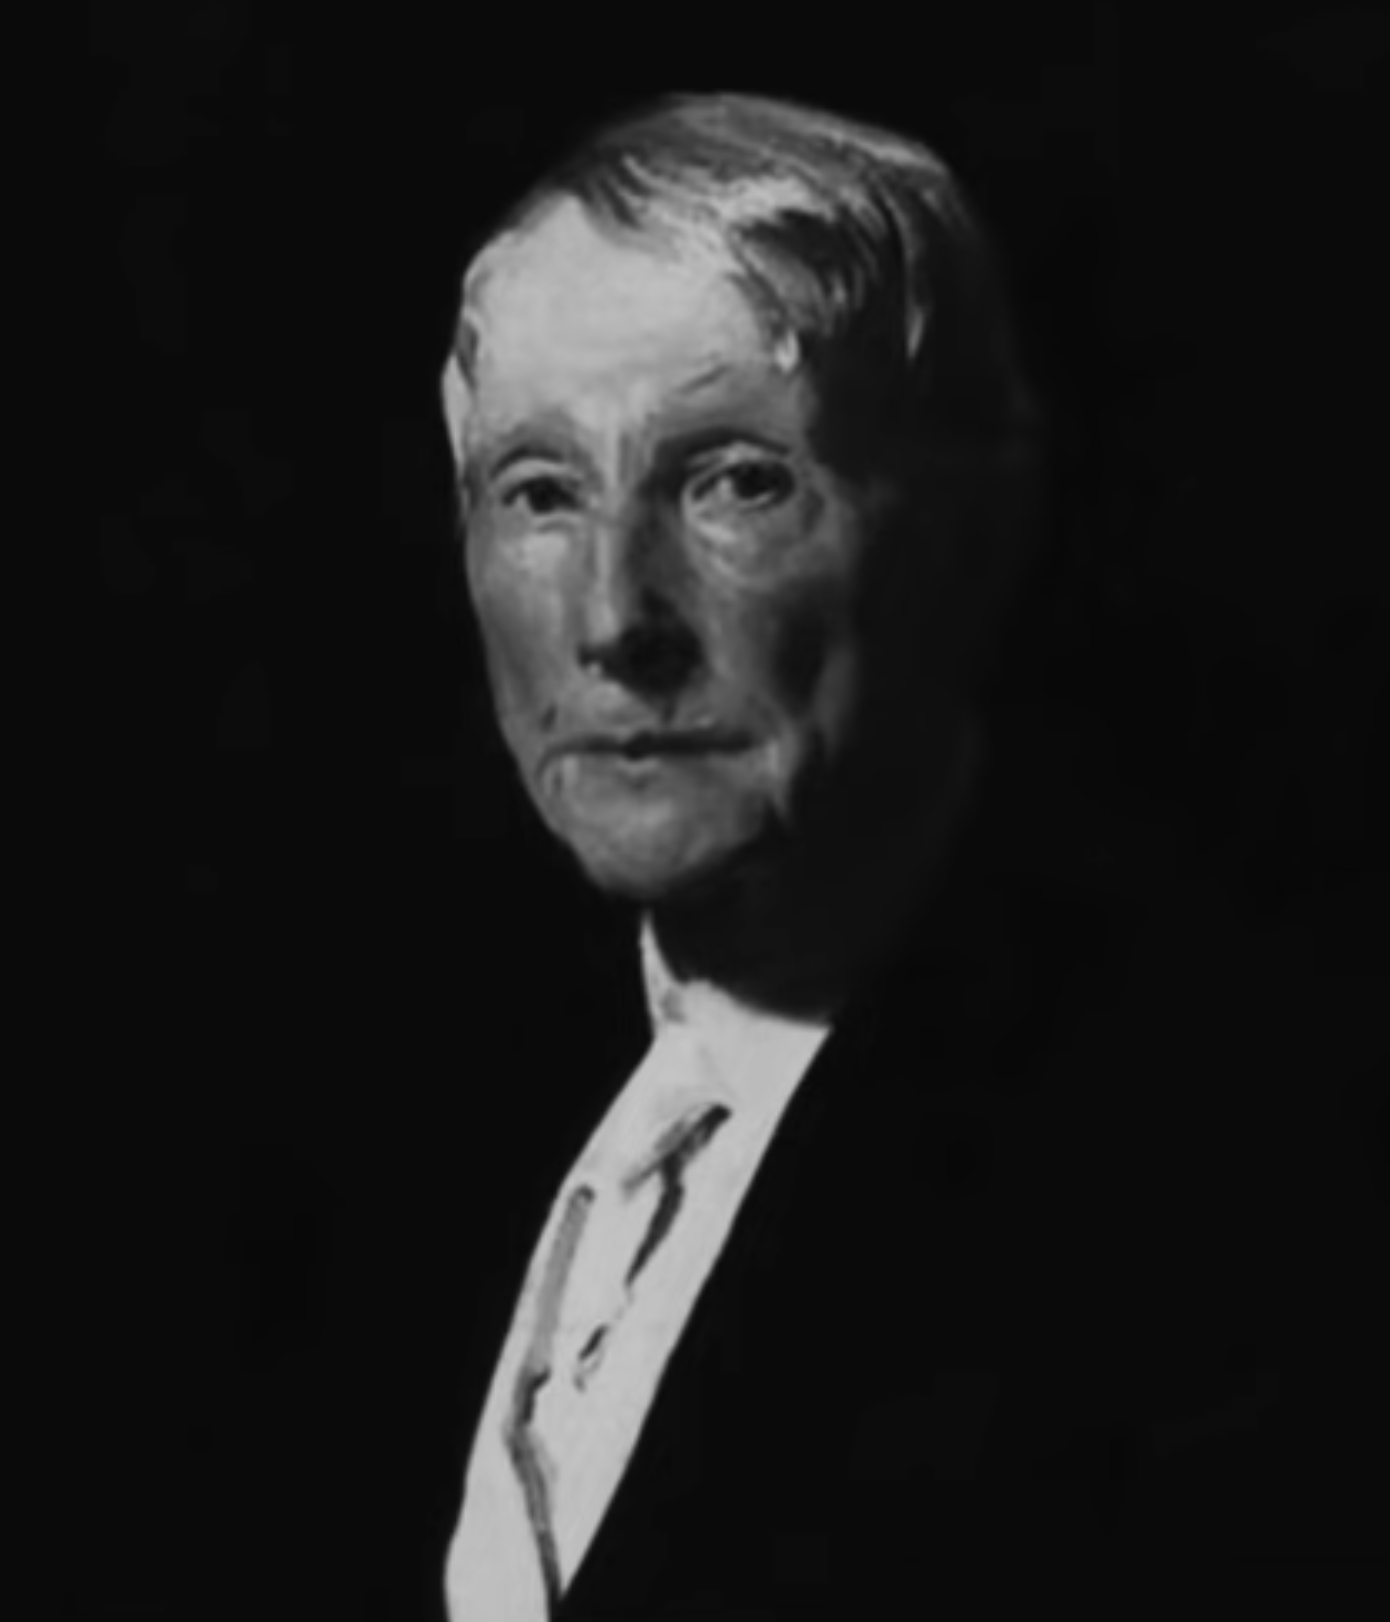 John D. Rockefeller - Wikipedia, la enciclopedia libre